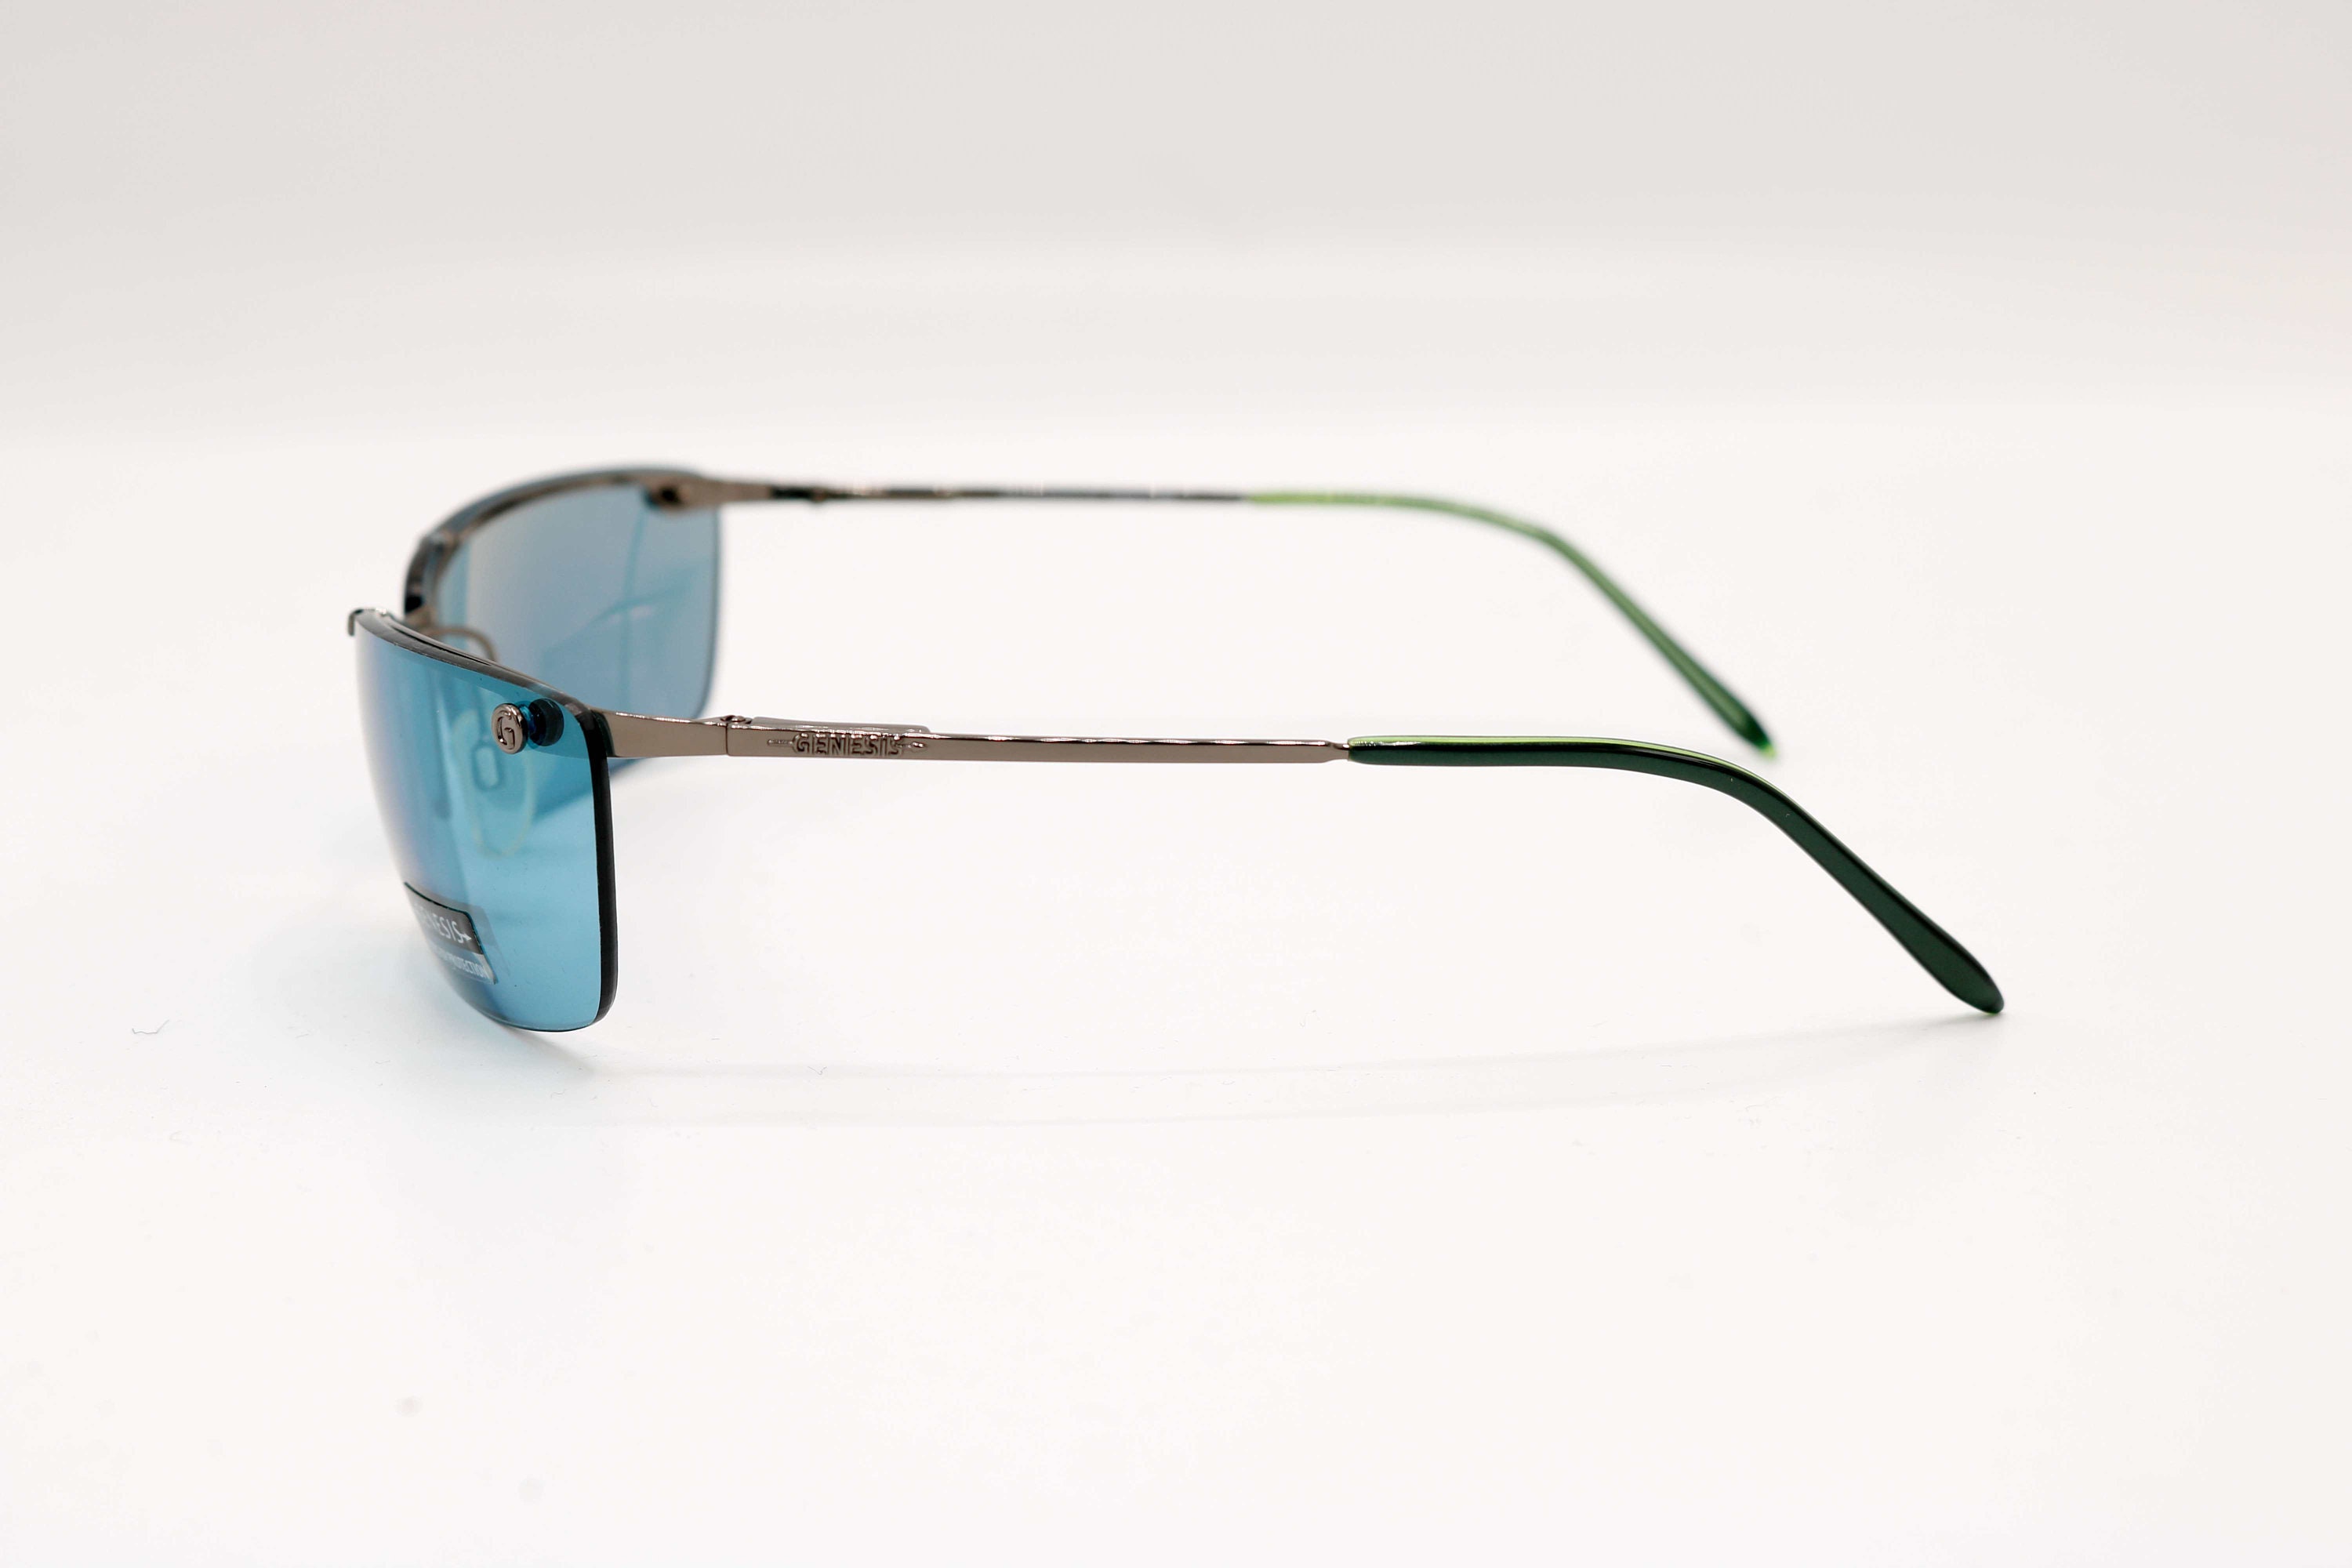 Forge Melankoli hjort GENESIS Mod Iggy Col 84 Rare Vintage Sunglasses Y2k - Etsy